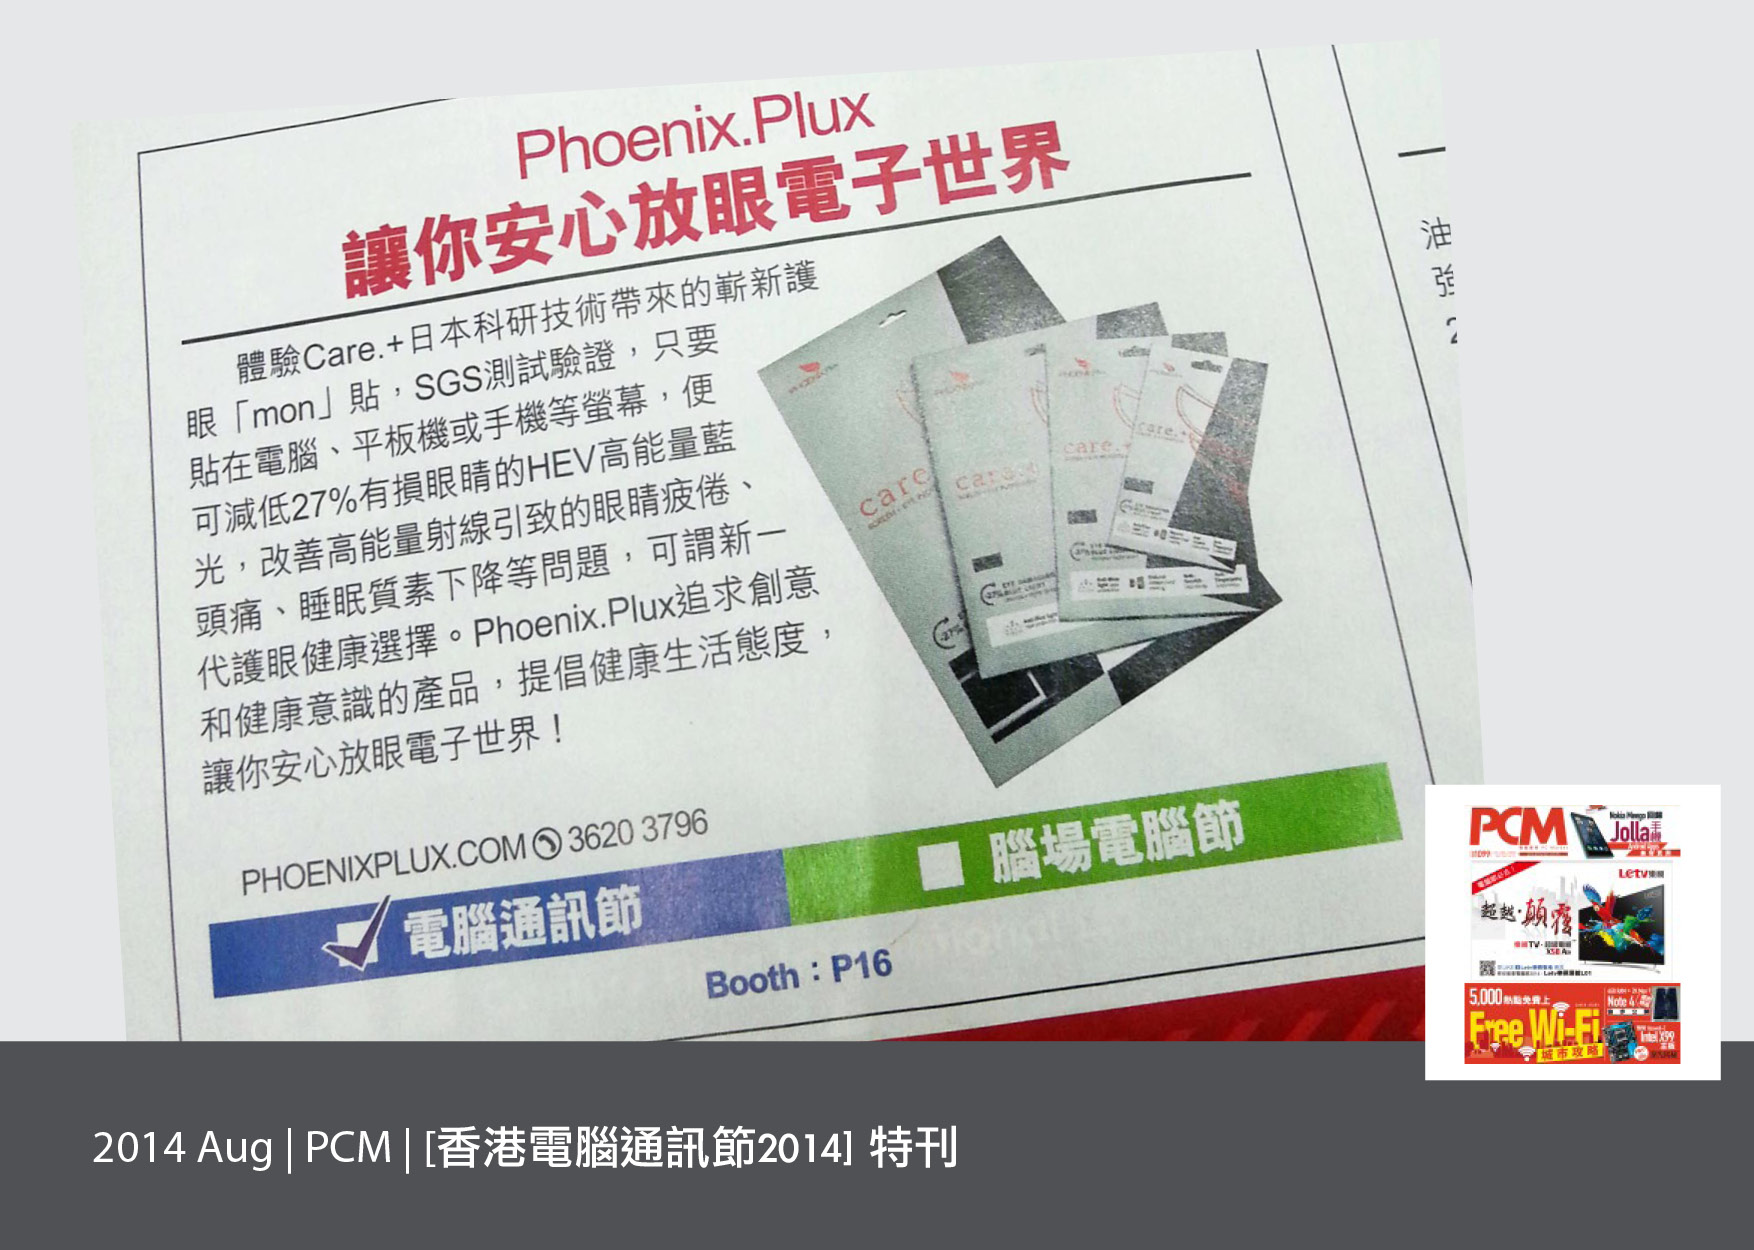 PCM supplement (Aug 2014)